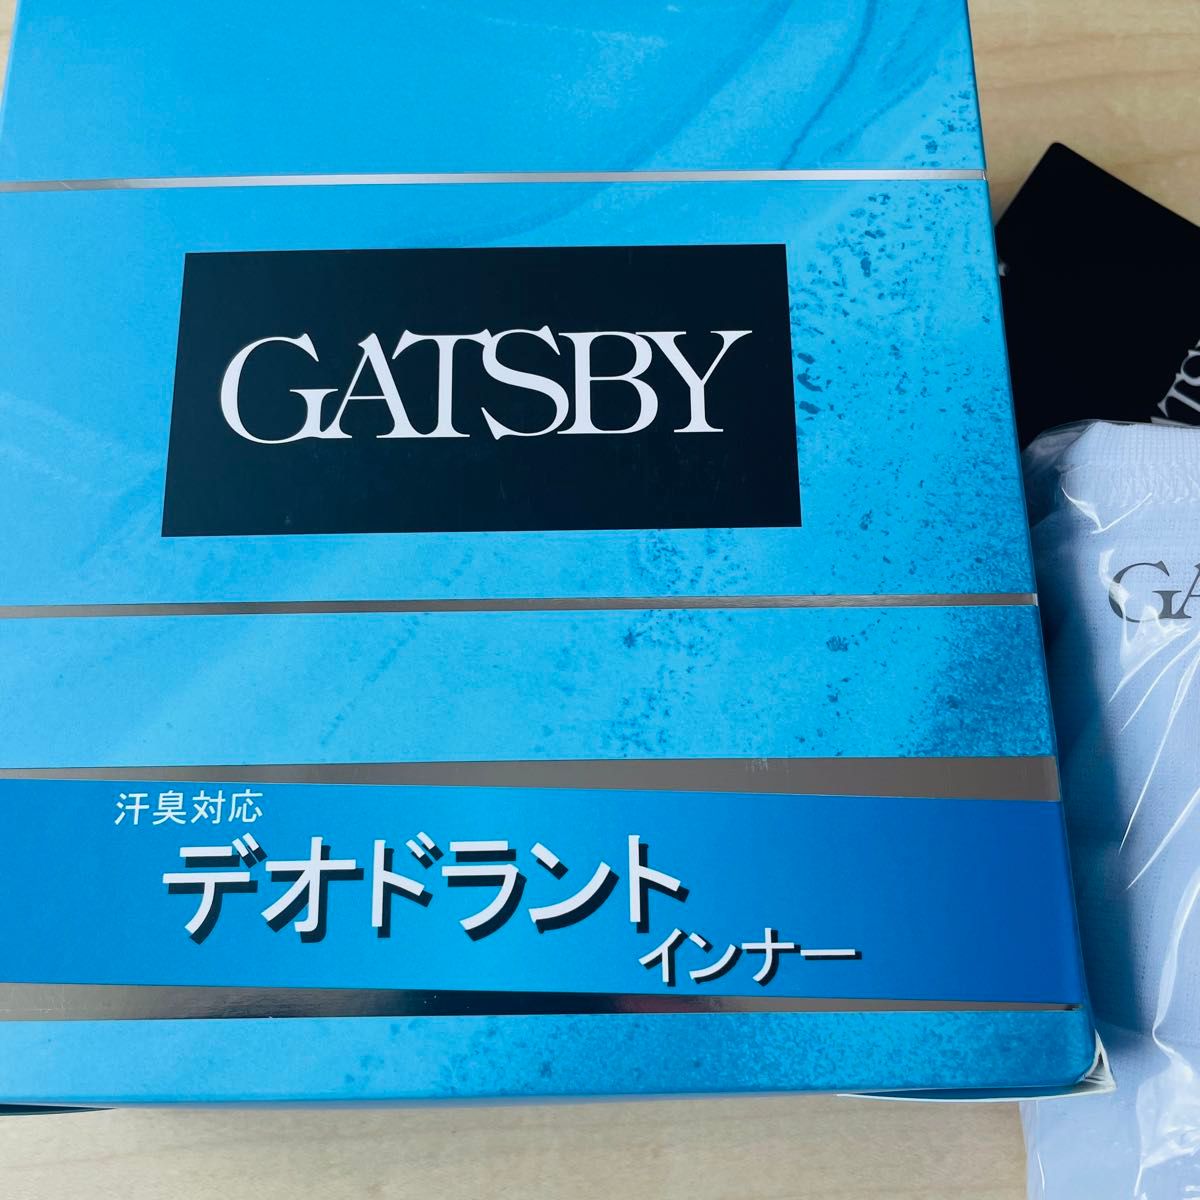 GATSBY ギャッツビー 半袖丸首 汗臭対応デオドラントインナー アンダーシャツ 3枚組 メンズ  Mサイズ ホワイト 